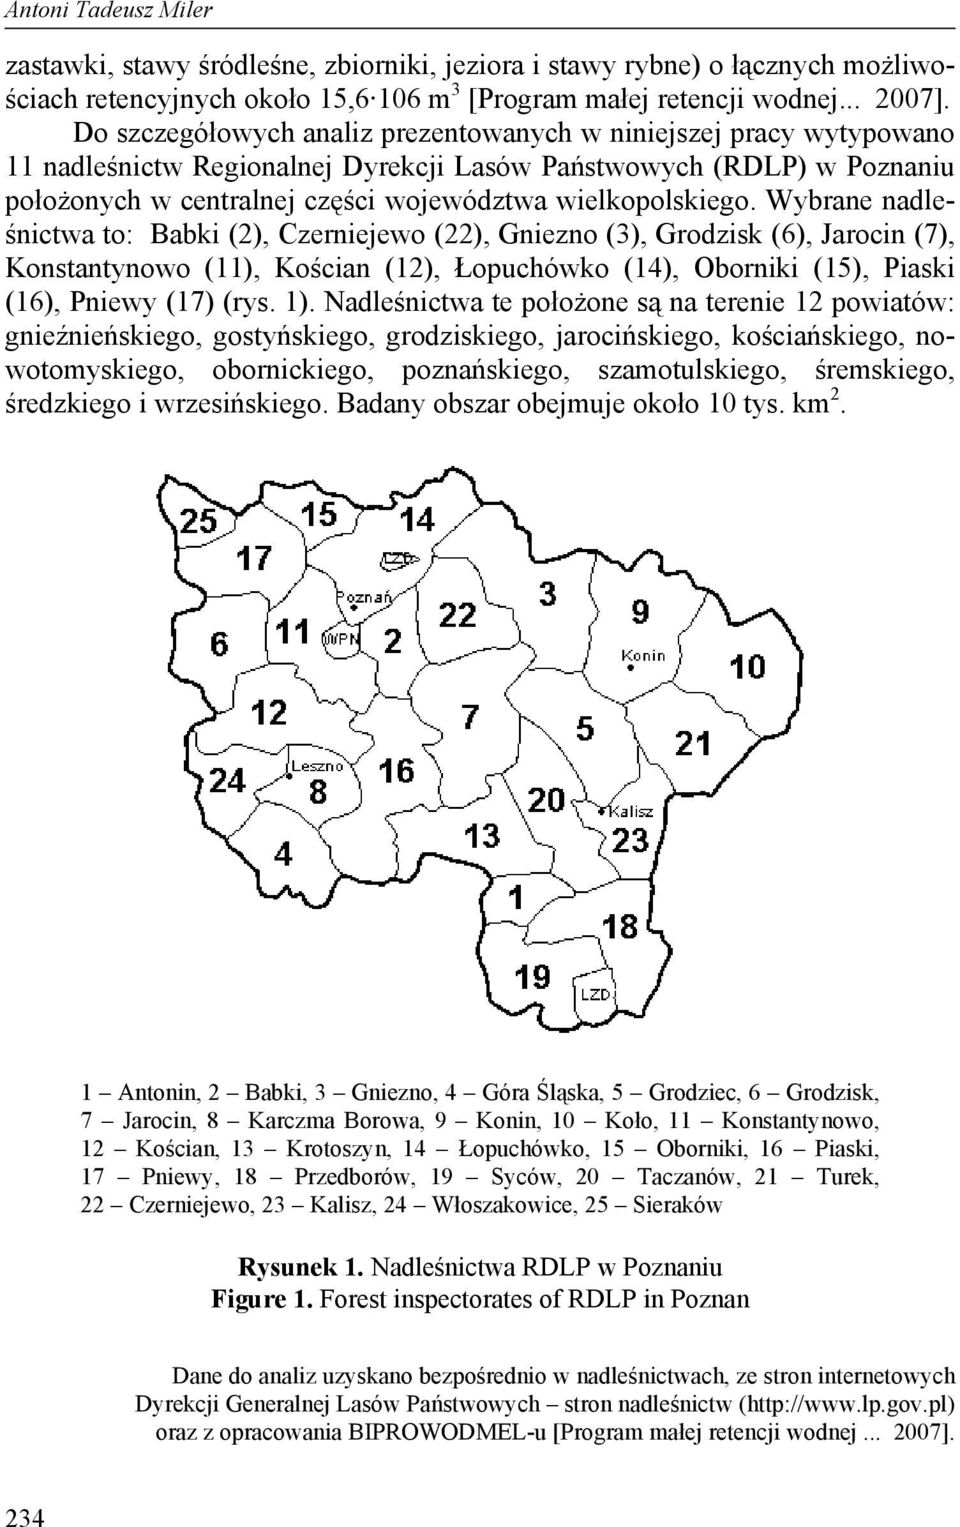 Wybrane nadleśnictwa to: Babki (2), Czerniejewo (22), Gniezno (3), Grodzisk (6), Jarocin (7), Konstantynowo (11), Kościan (12), Łopuchówko (14), Oborniki (15), Piaski (16), Pniewy (17) (rys. 1).